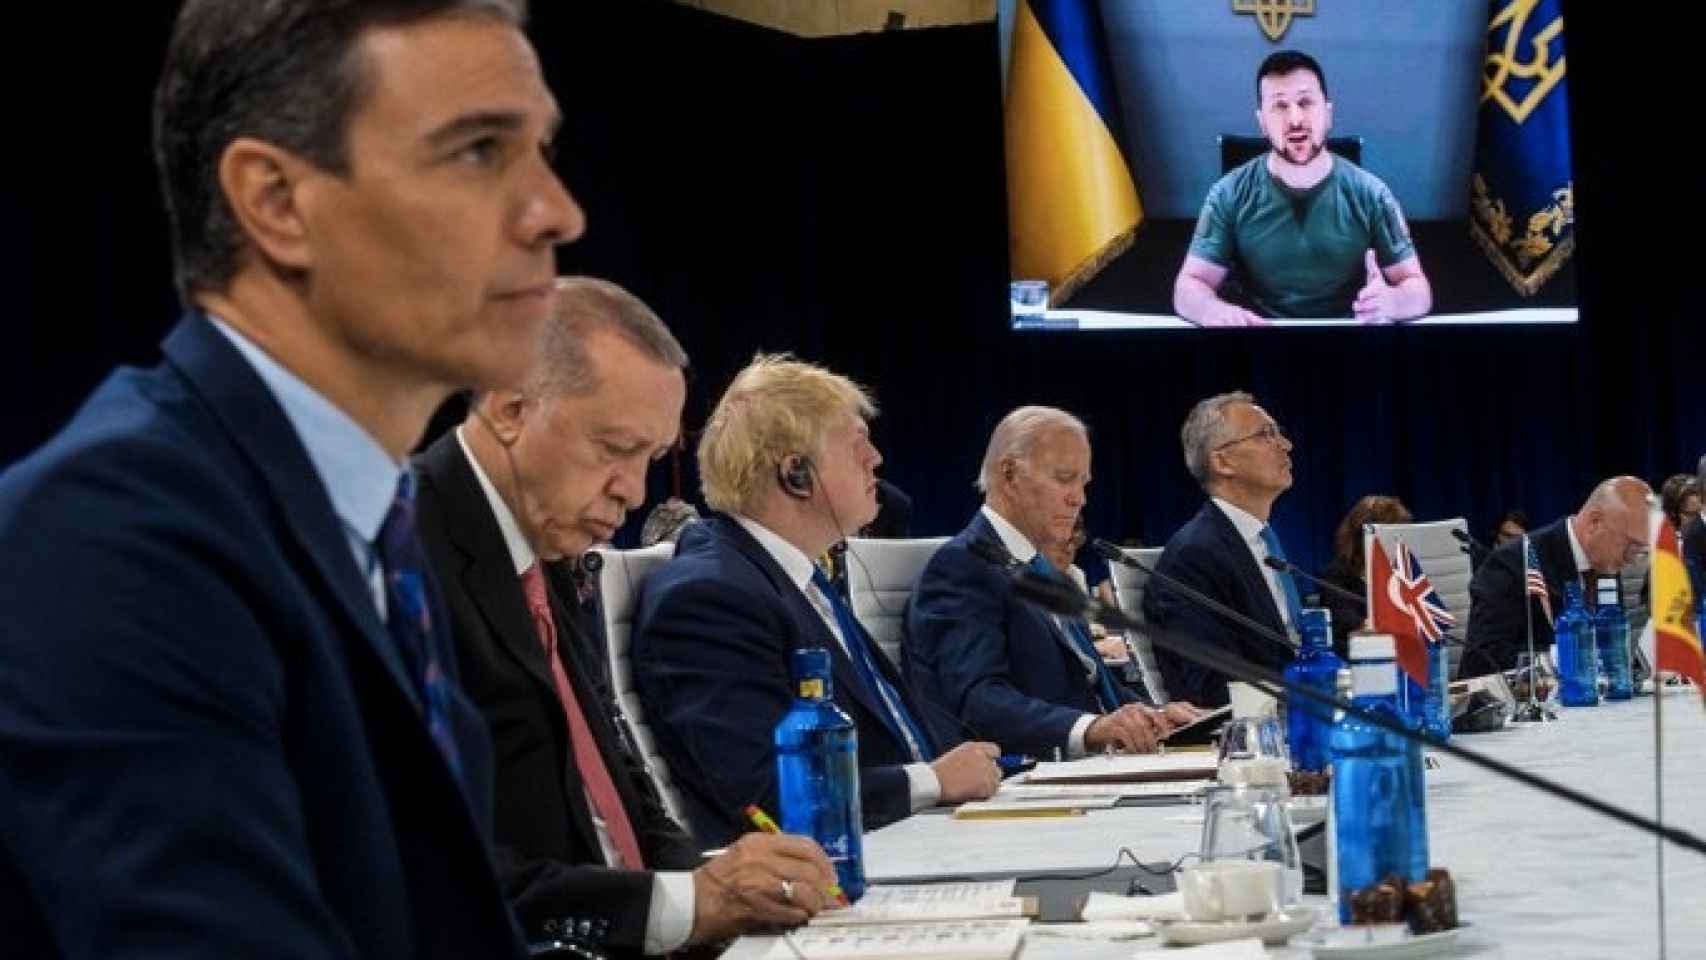 El presidente del Gobierno, Pedro Sánchez, escucha junto a los líderes de la OTAN al presidente de Ucrania.